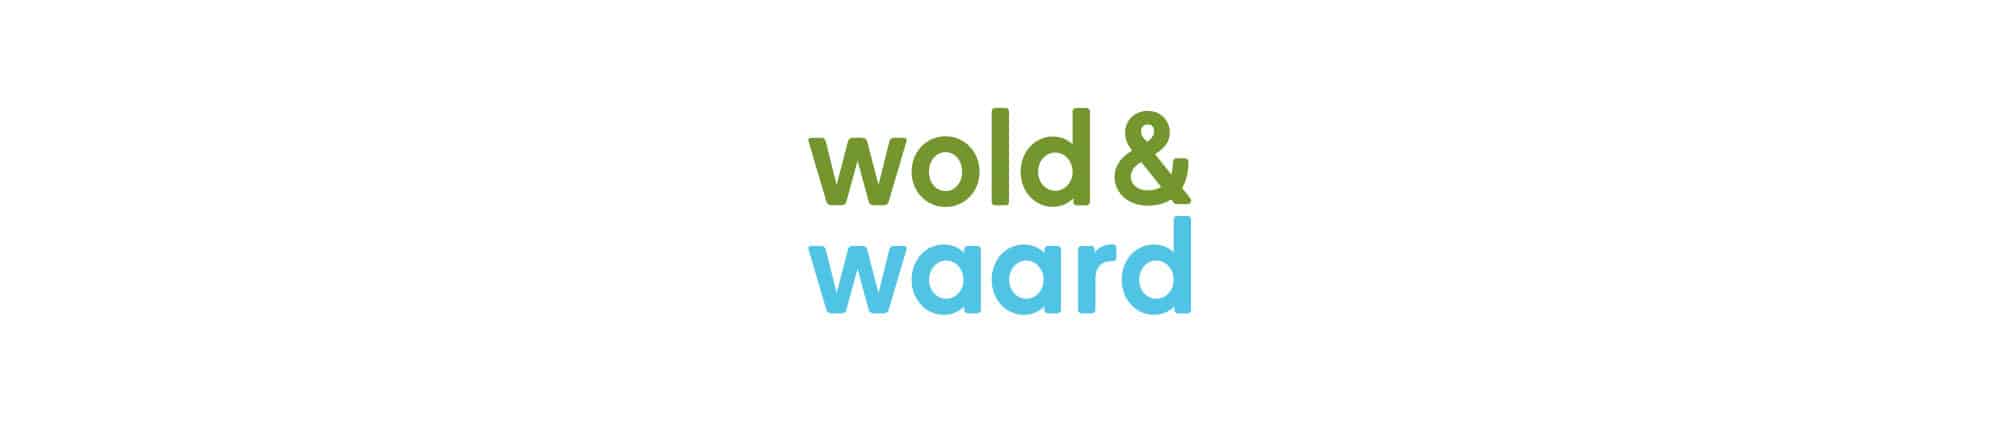 Wold & Waard